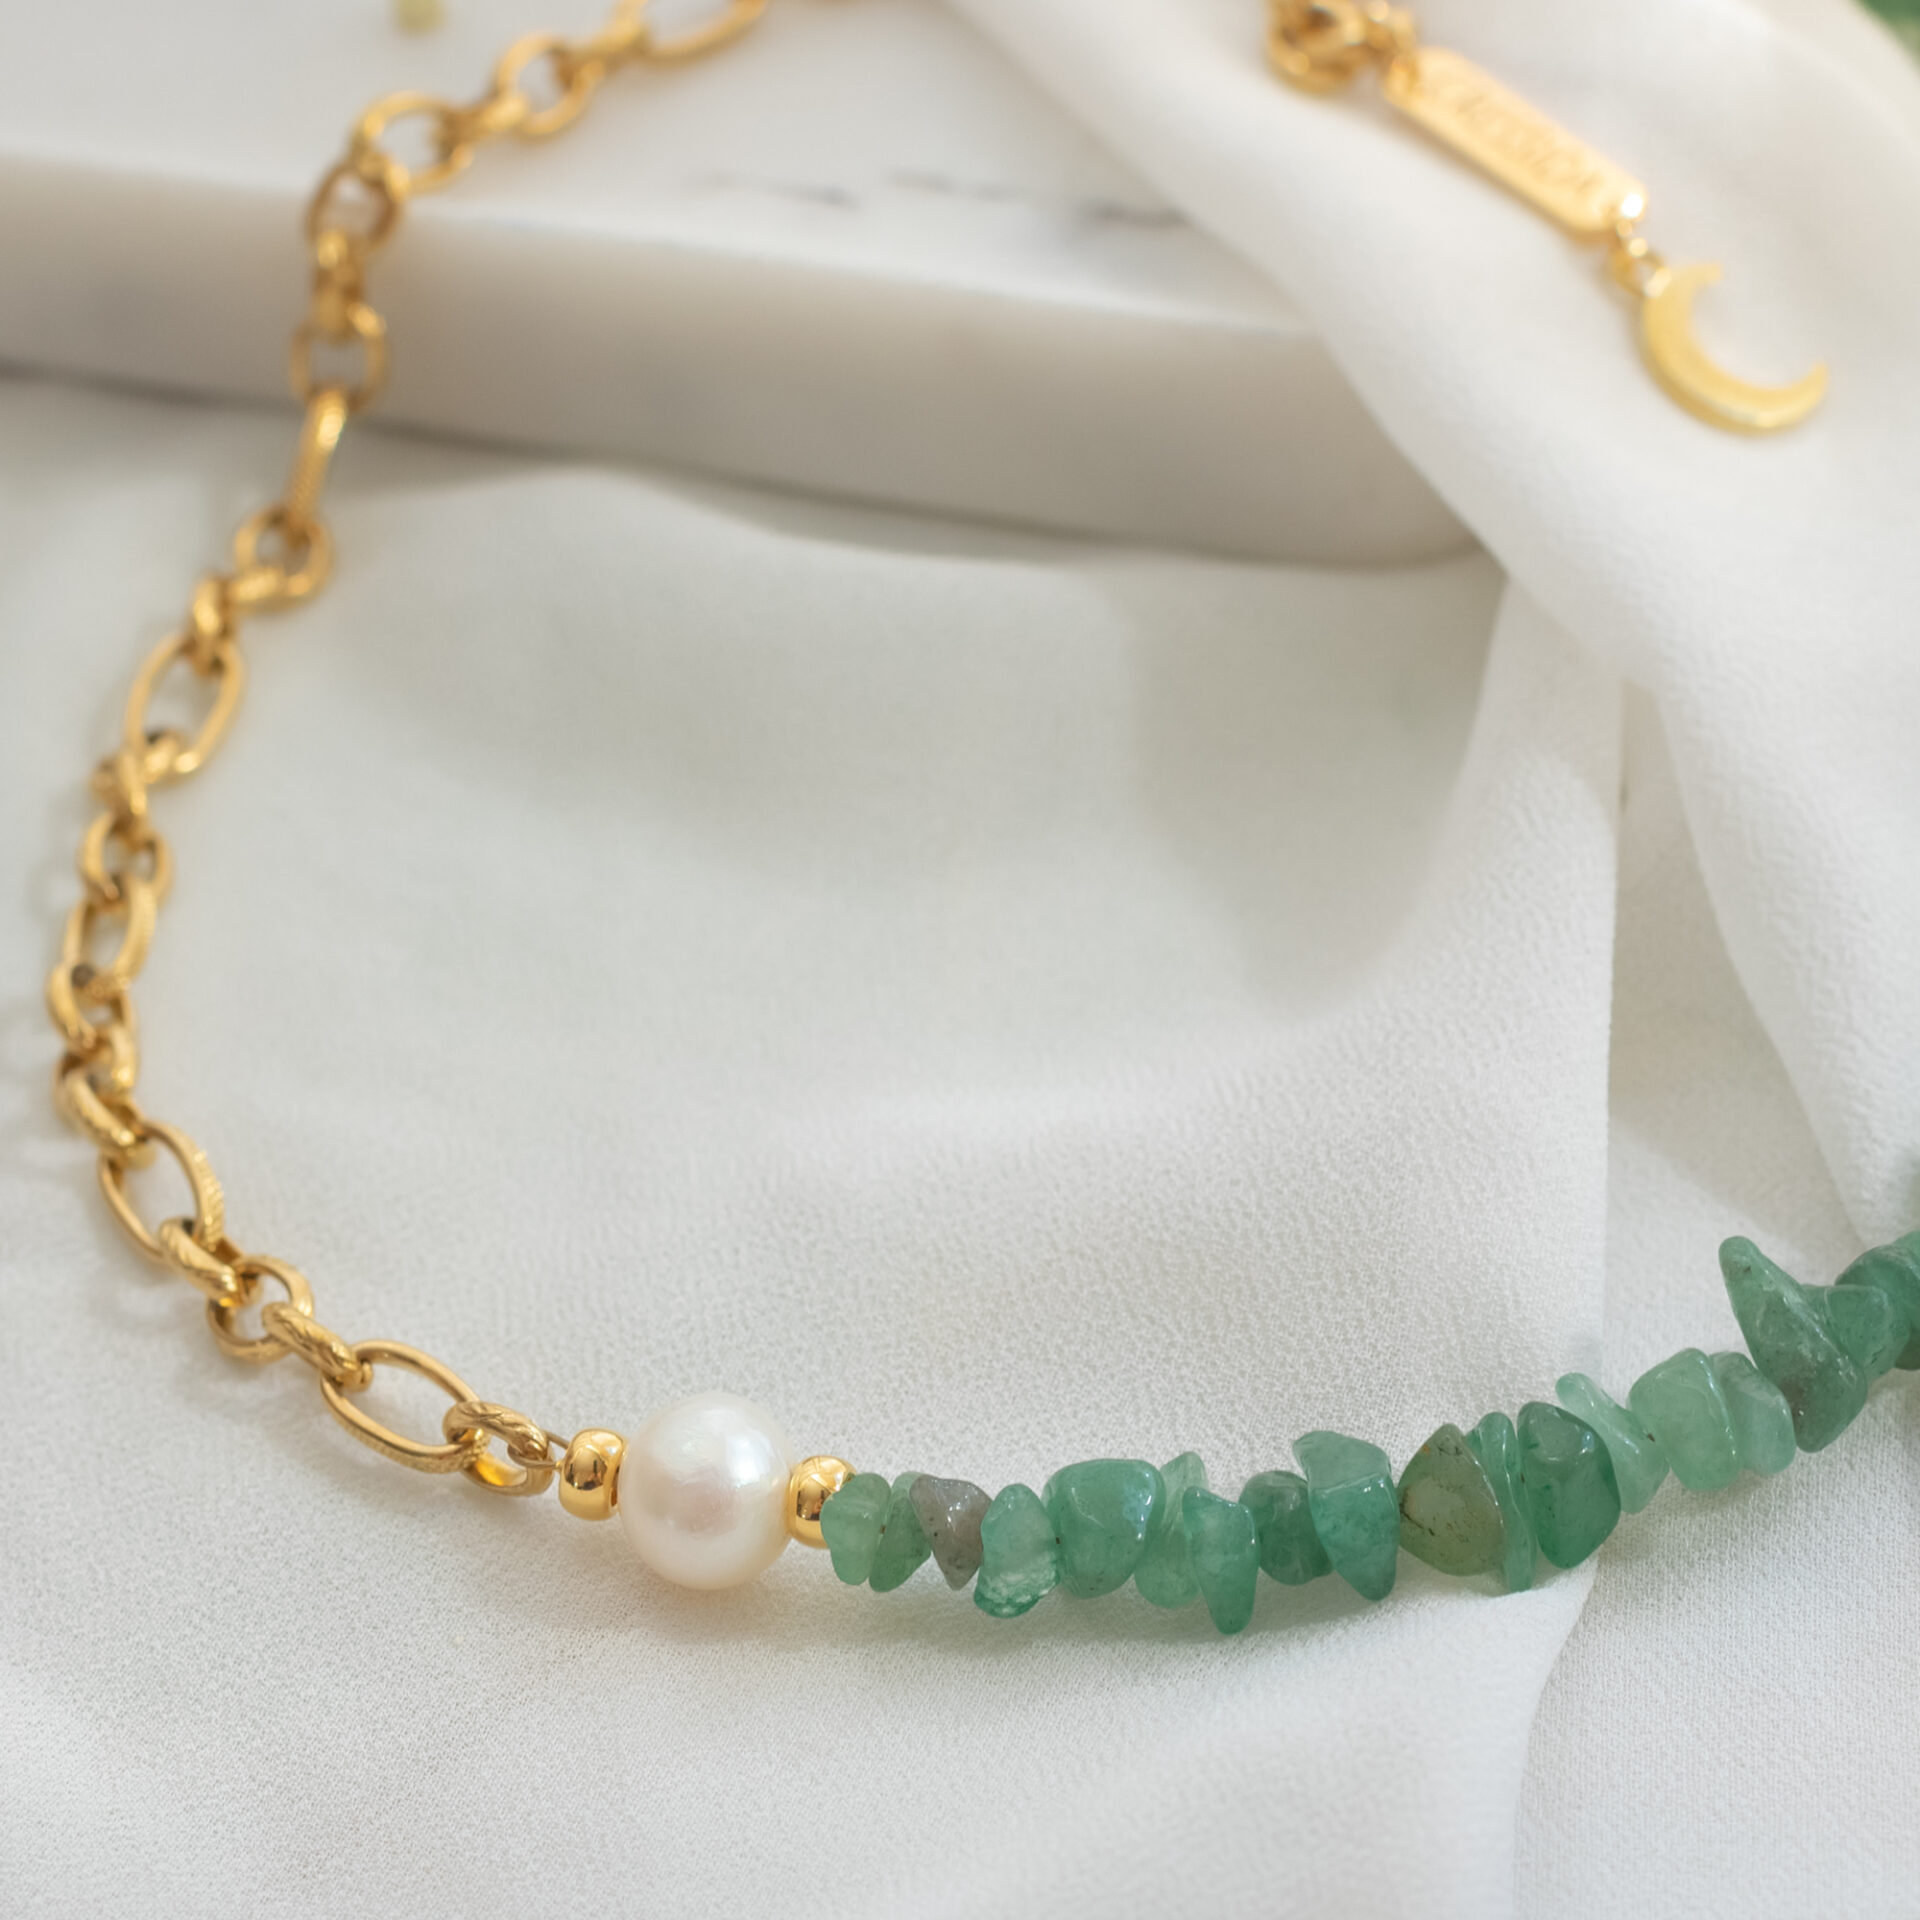 Emerald Κολιέ με ημιπολύτιμες πέτρες